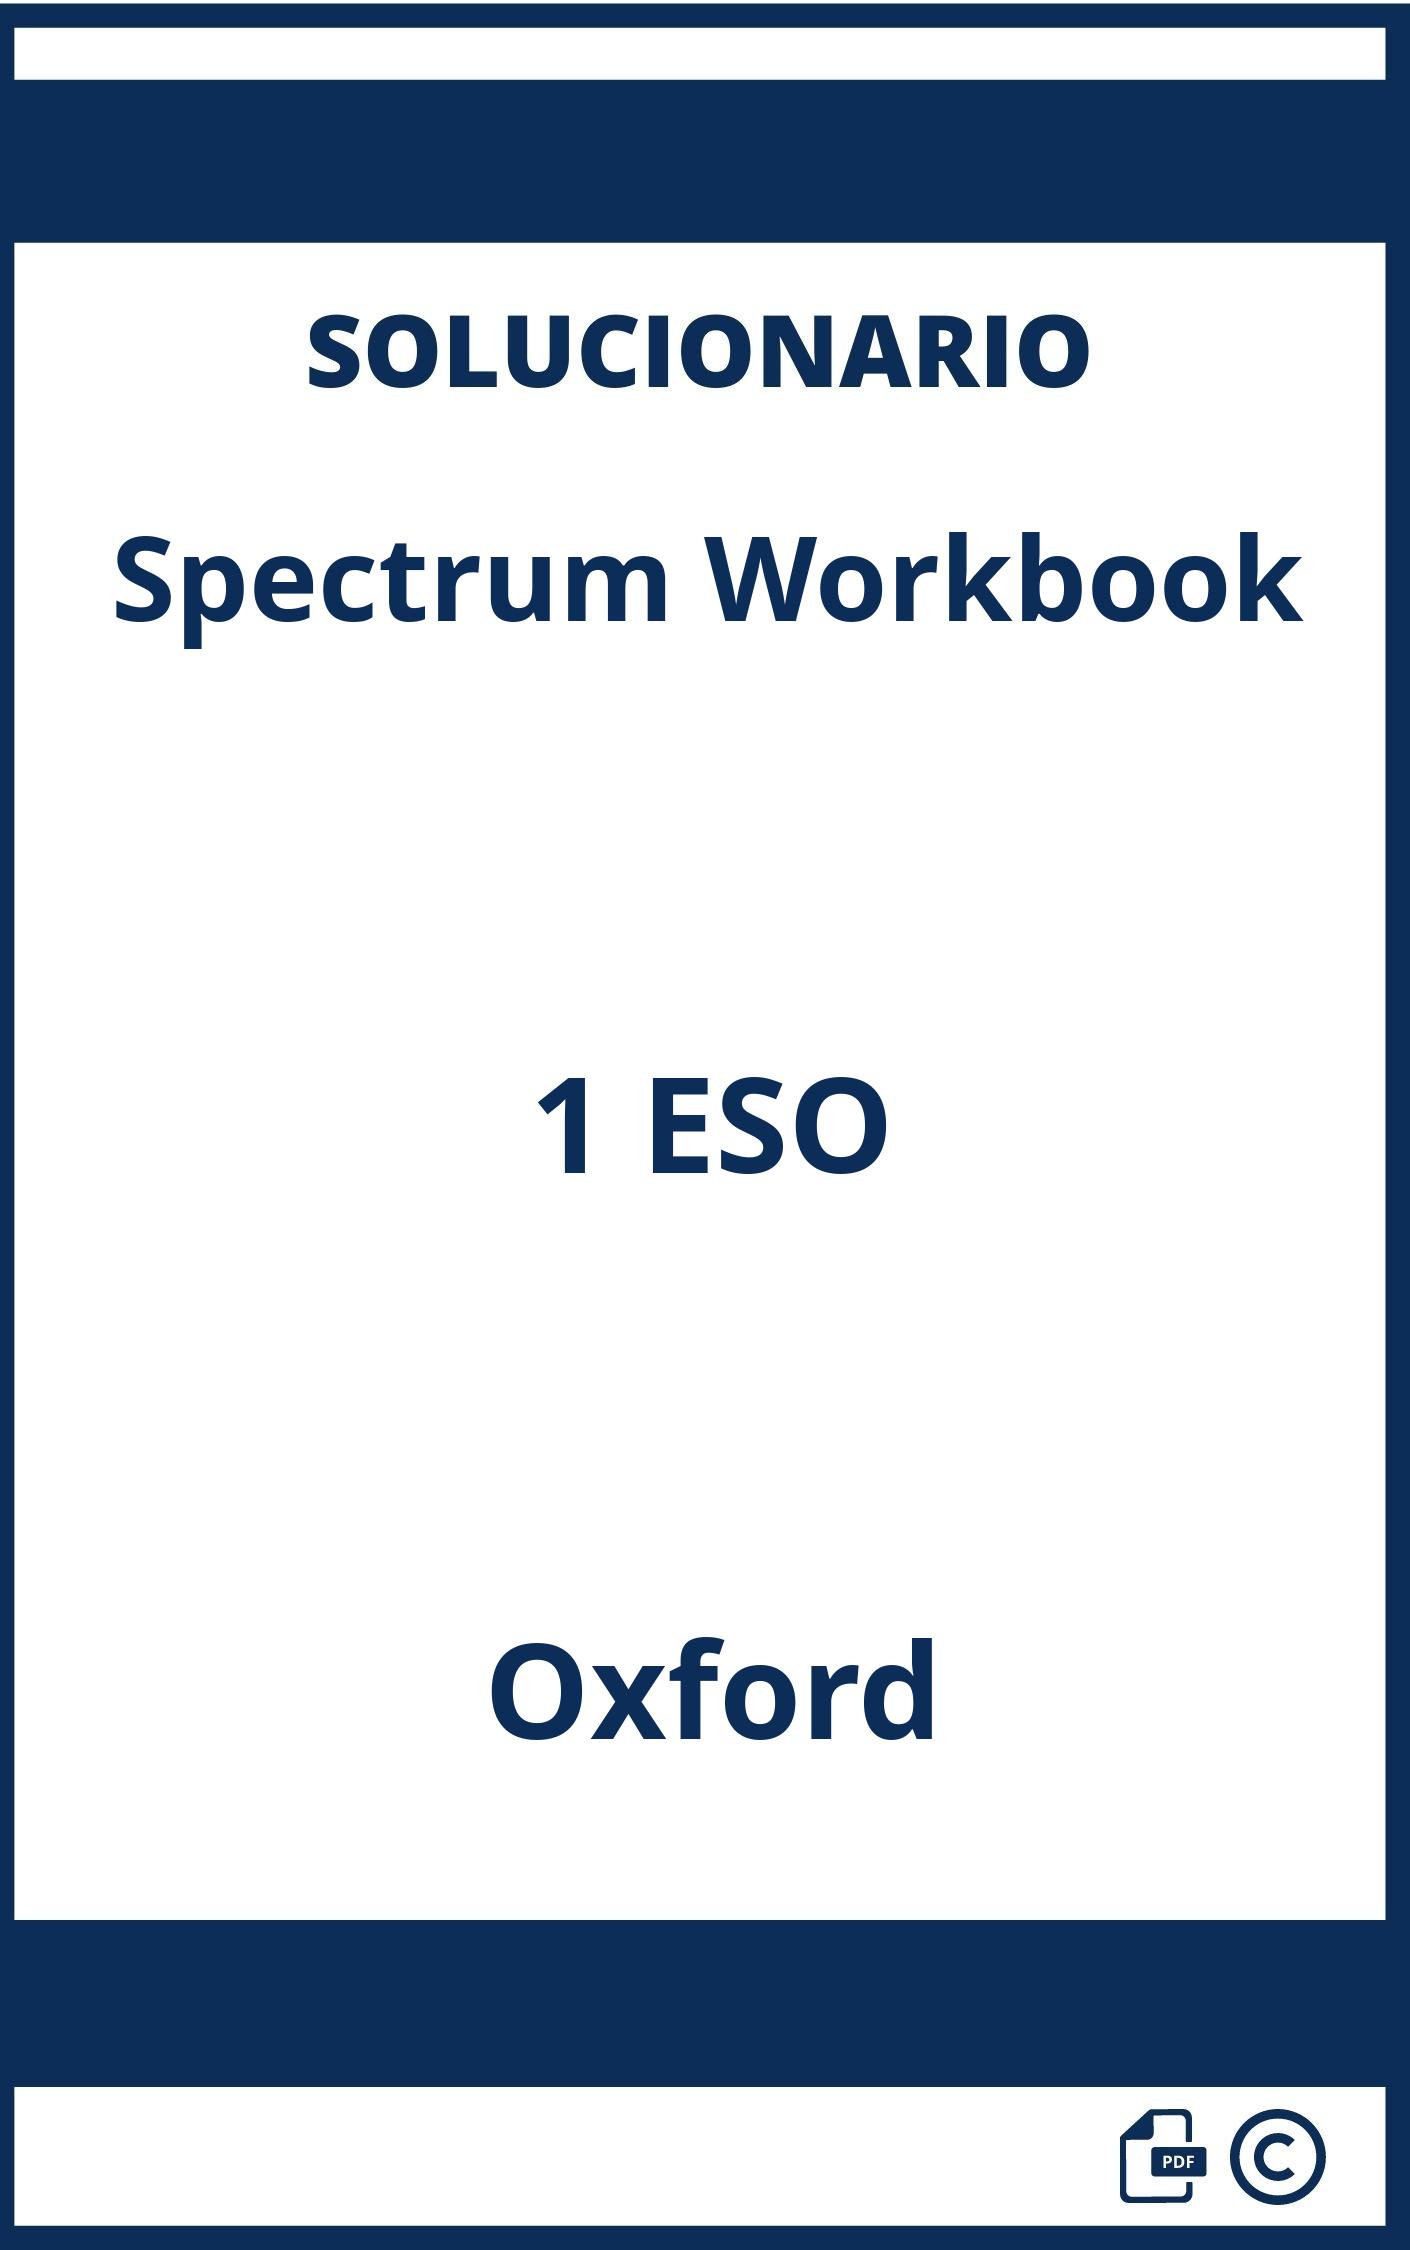 Solucionario Spectrum Workbook 1 ESO Oxford